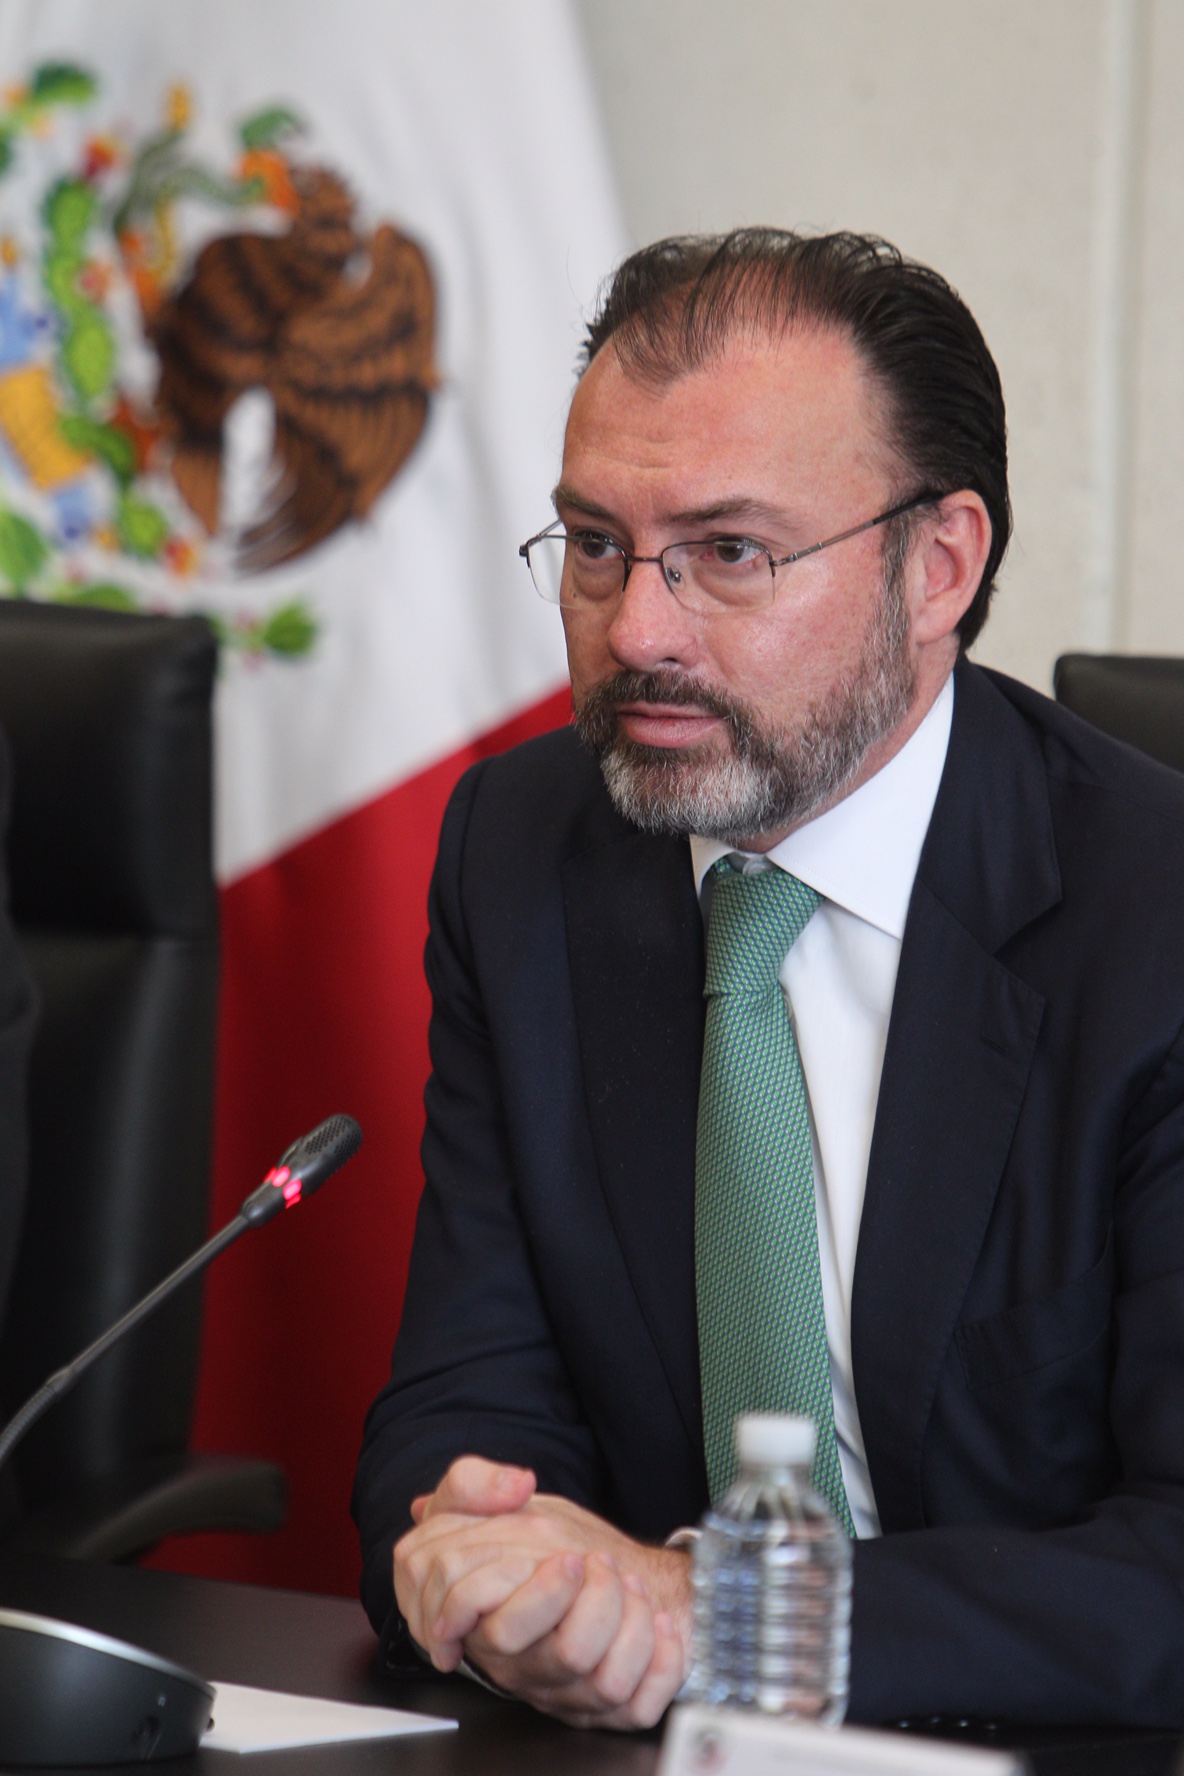 Expresó México a EU “grave preocupación” por posible separación de familias migrantes